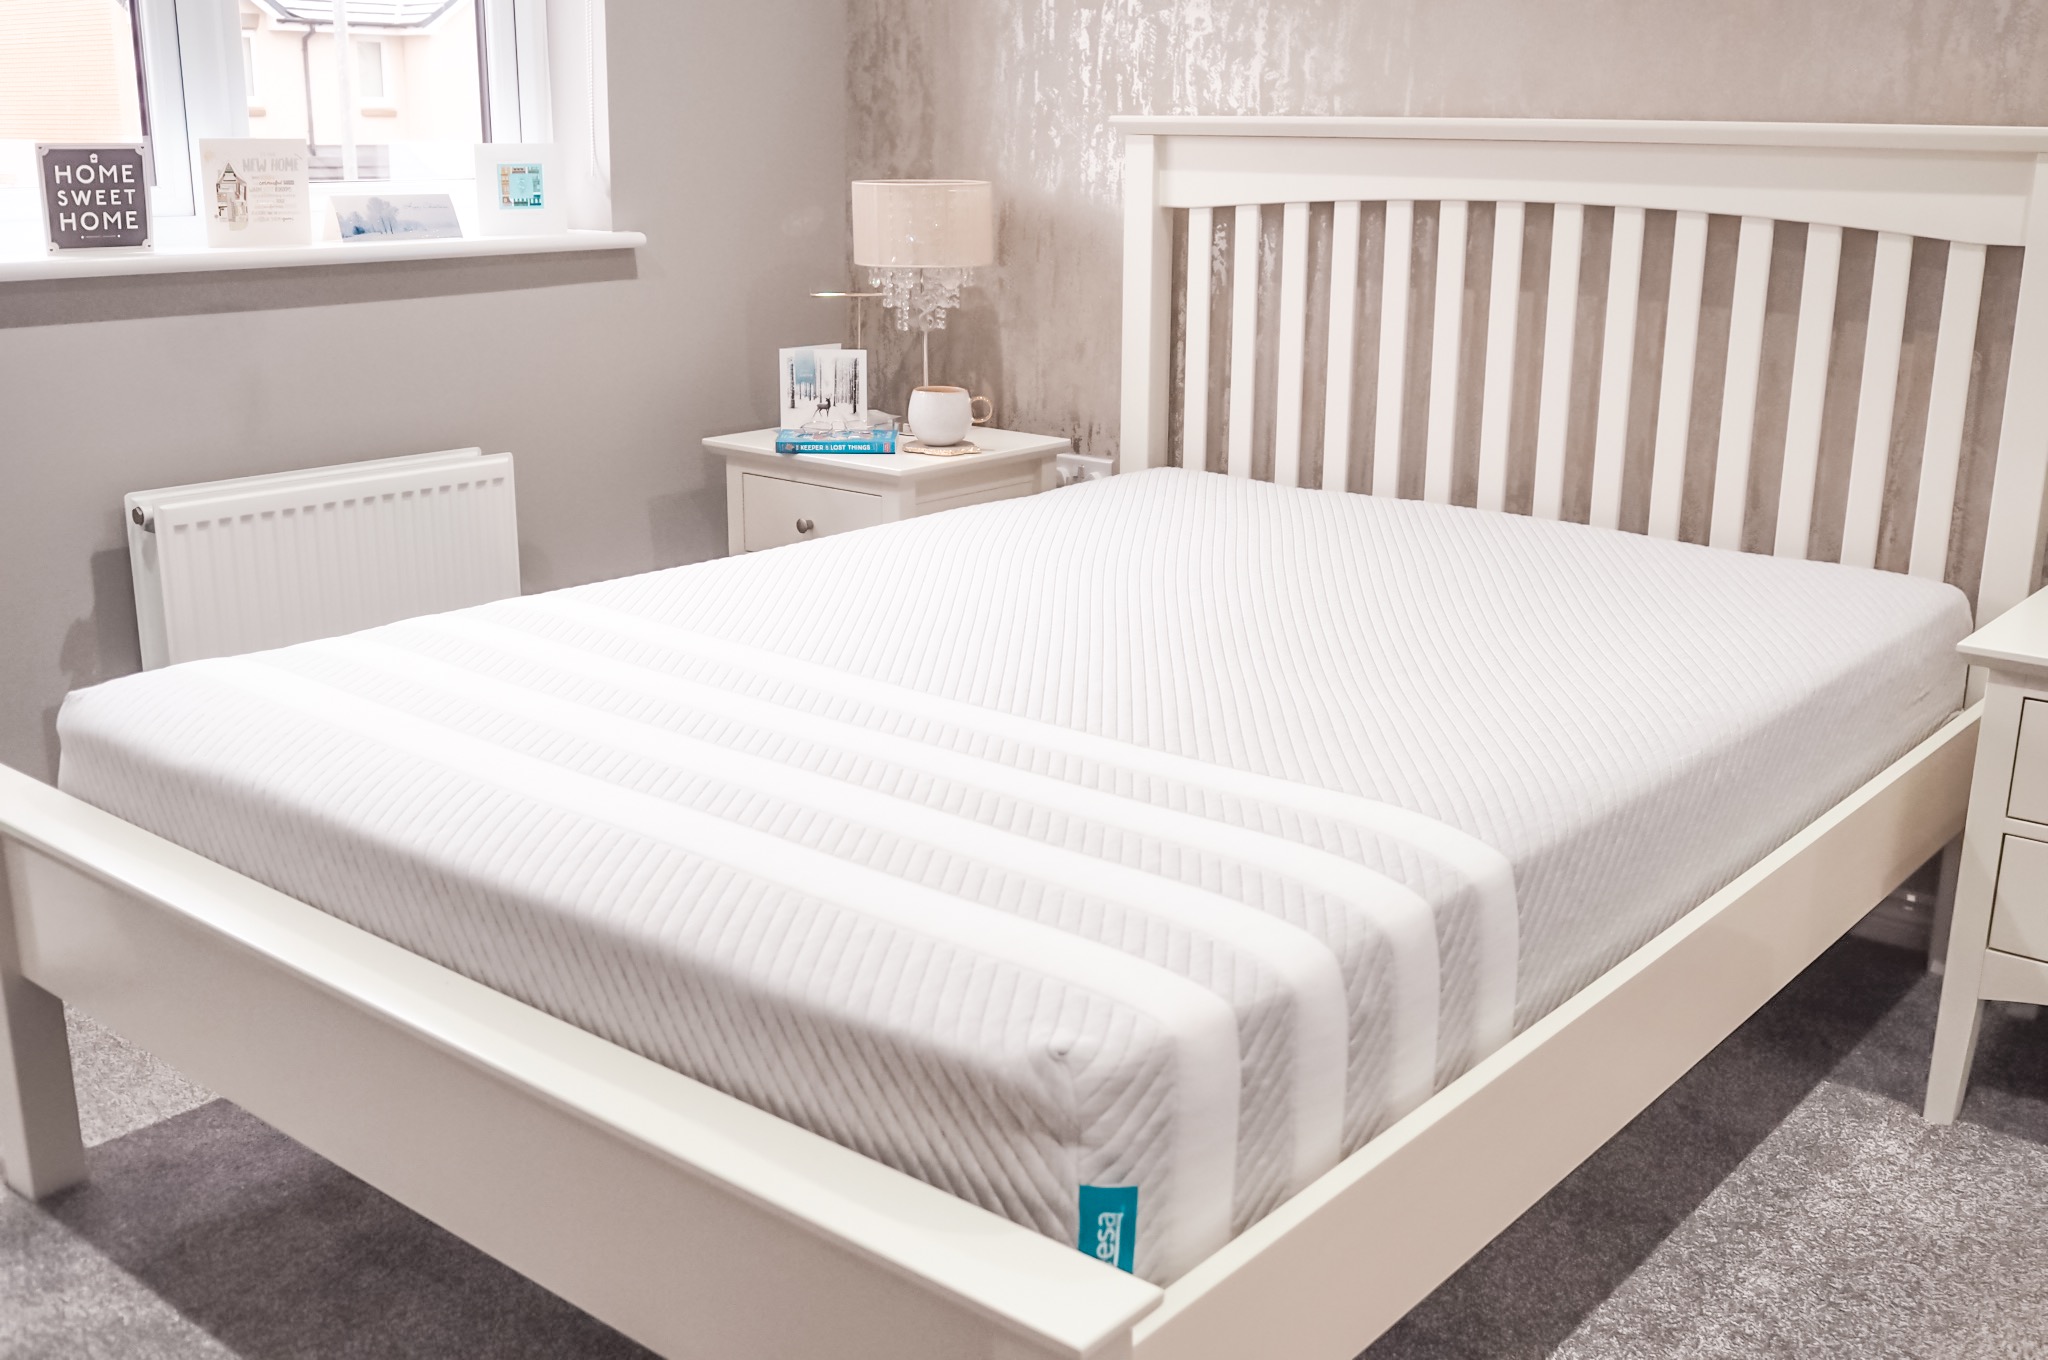 Leesa foam mattress review | Leesa discount code | Leesa £100 voucher code | foam mattress review | pros and cons of foam mattress